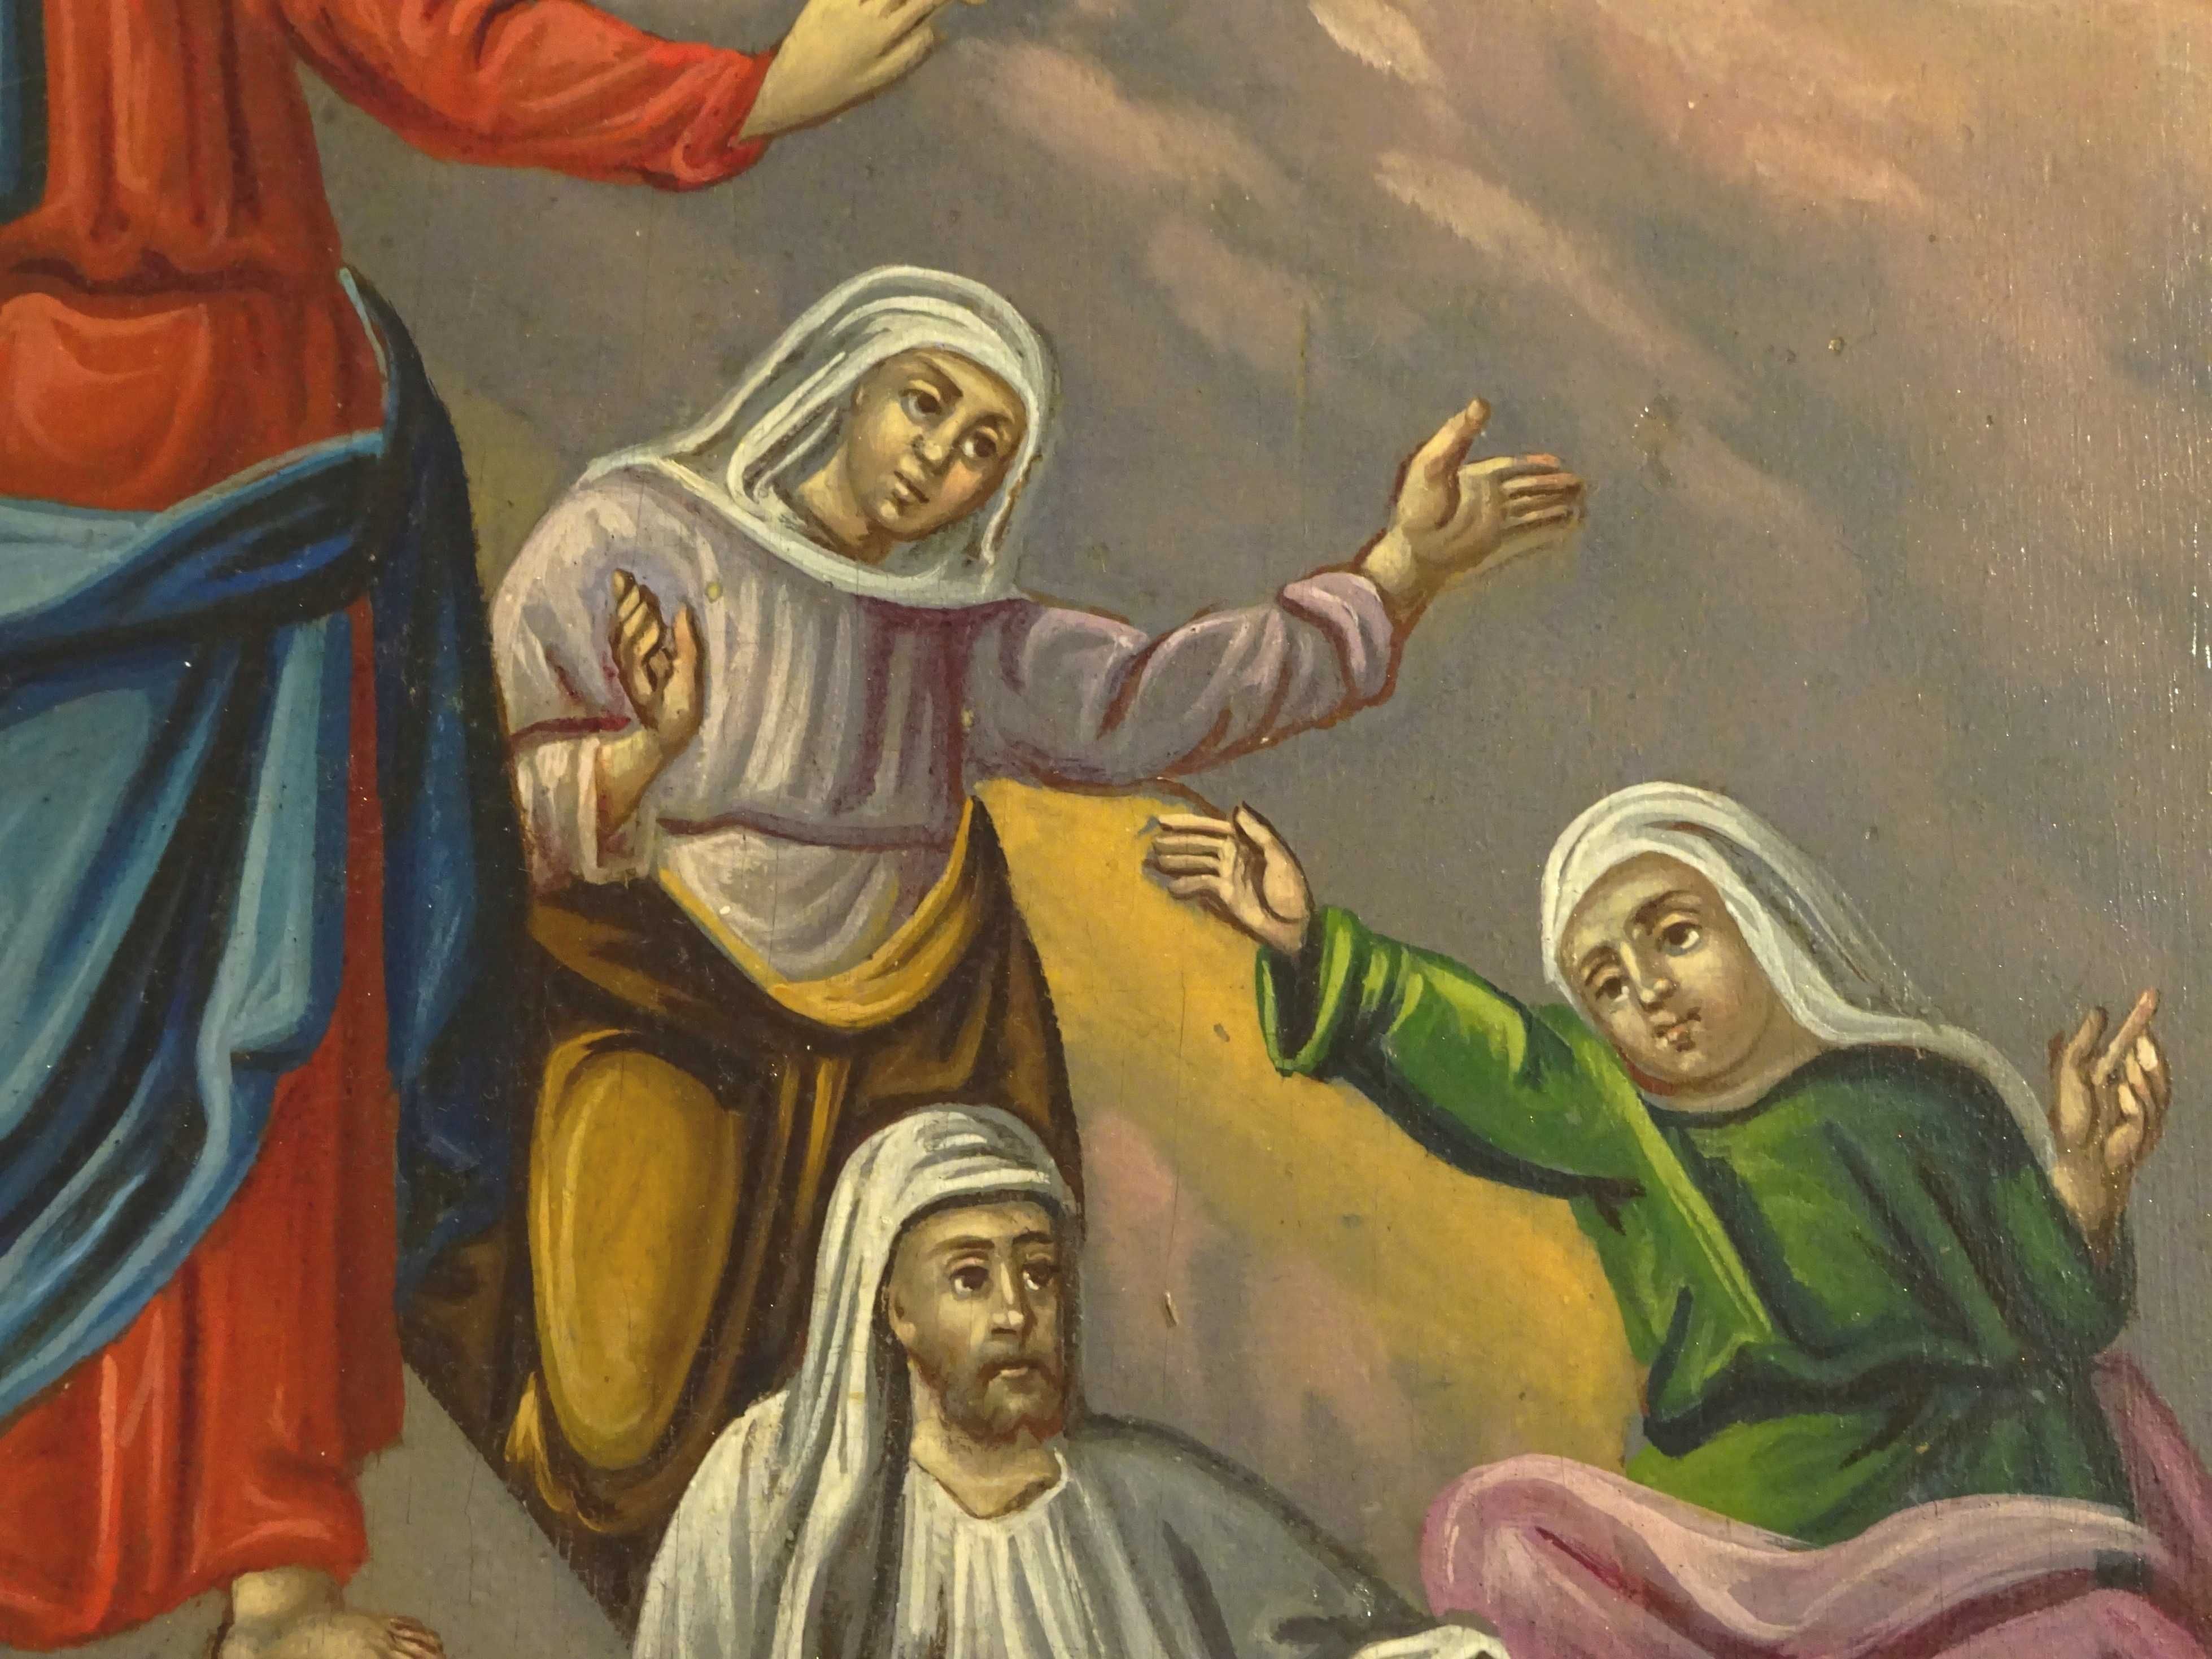 Icoana ‘Invierea lui Lazar’, pictata pe lemn in 1885 - Deosebita